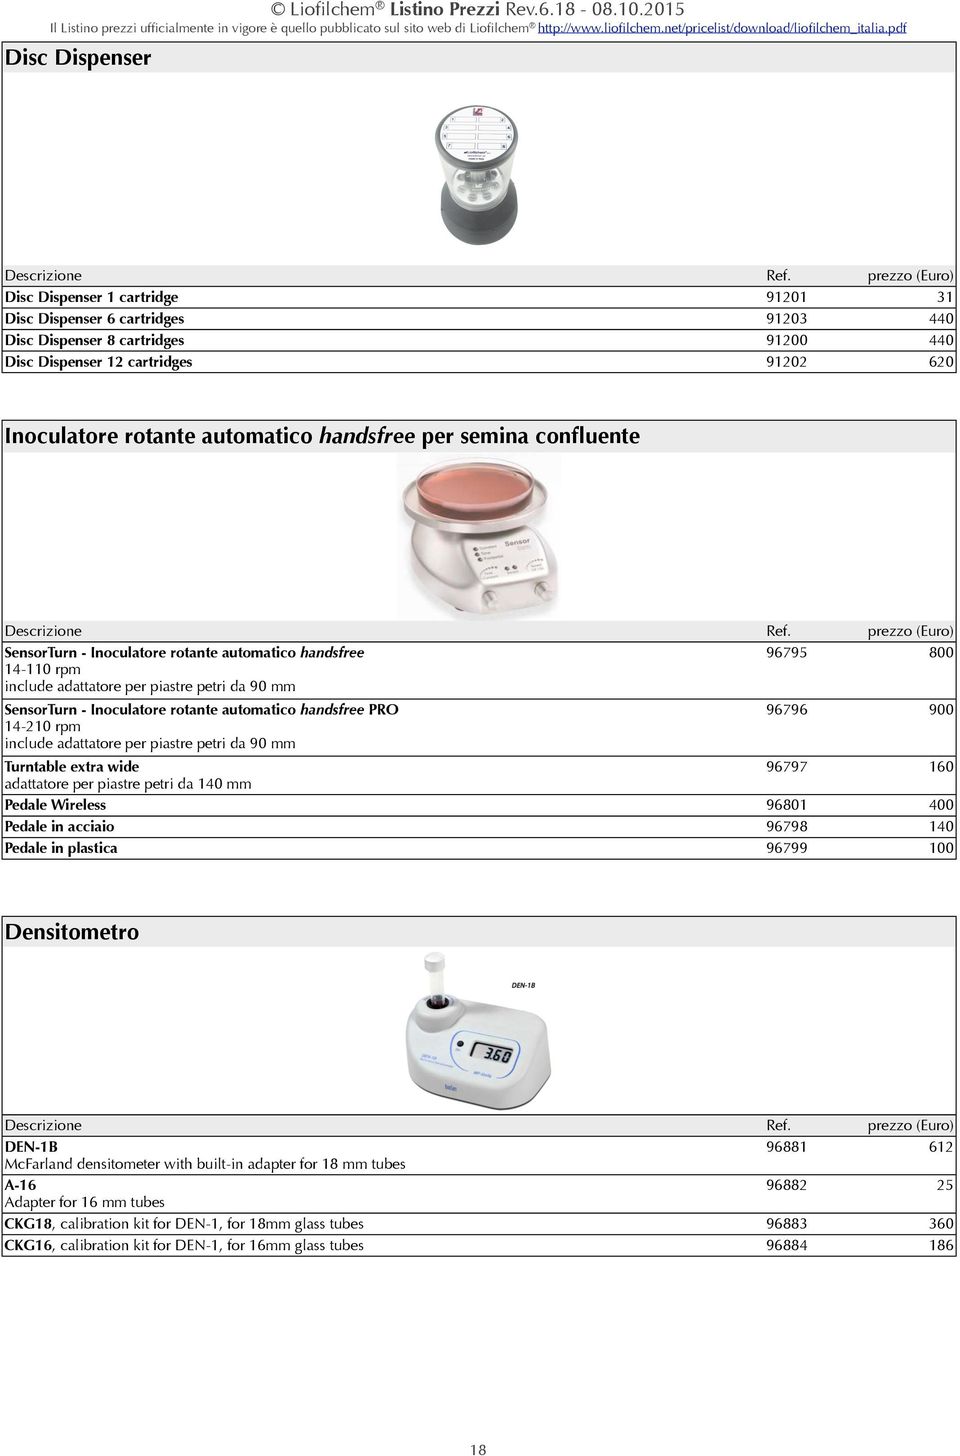 91201 91203 91200 91202 prezzo (Euro) 31 440 440 620 Descrizione SensorTurn - Inoculatore rotante automatico handsfree 14-110 rpm include adattatore per piastre petri da 90 mm Ref.